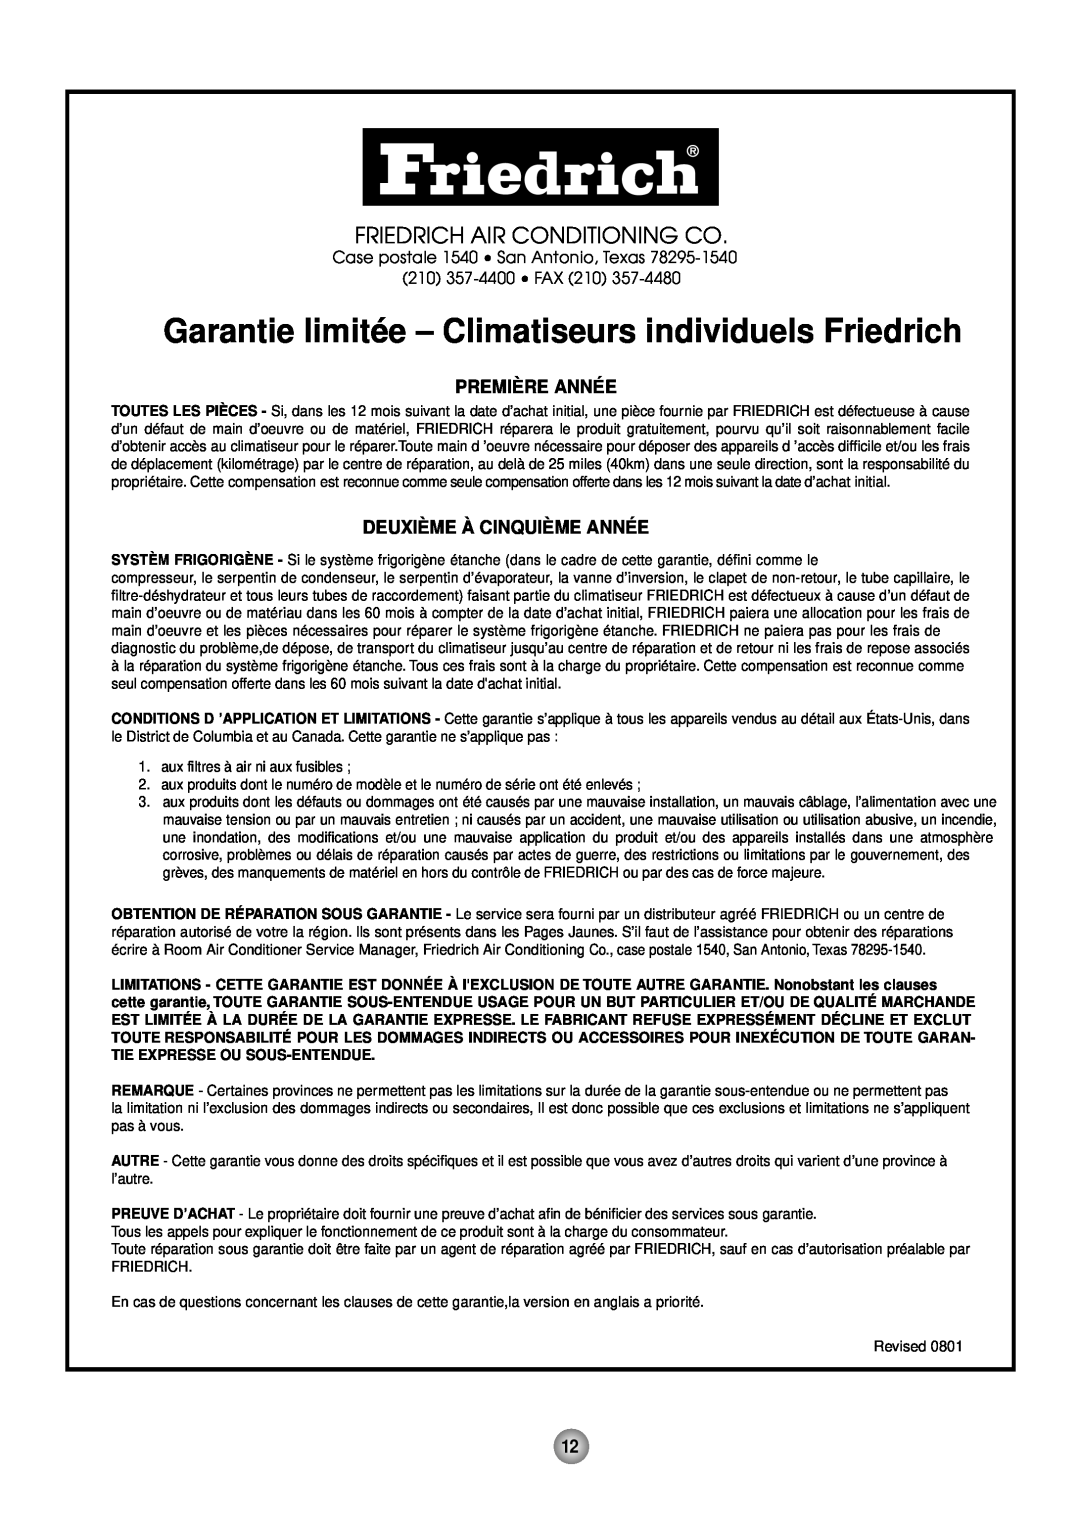 Friedrich ZStar operation manual Friedrich Air Conditioning Co, Première Année, Deuxième À Cinquième Année 